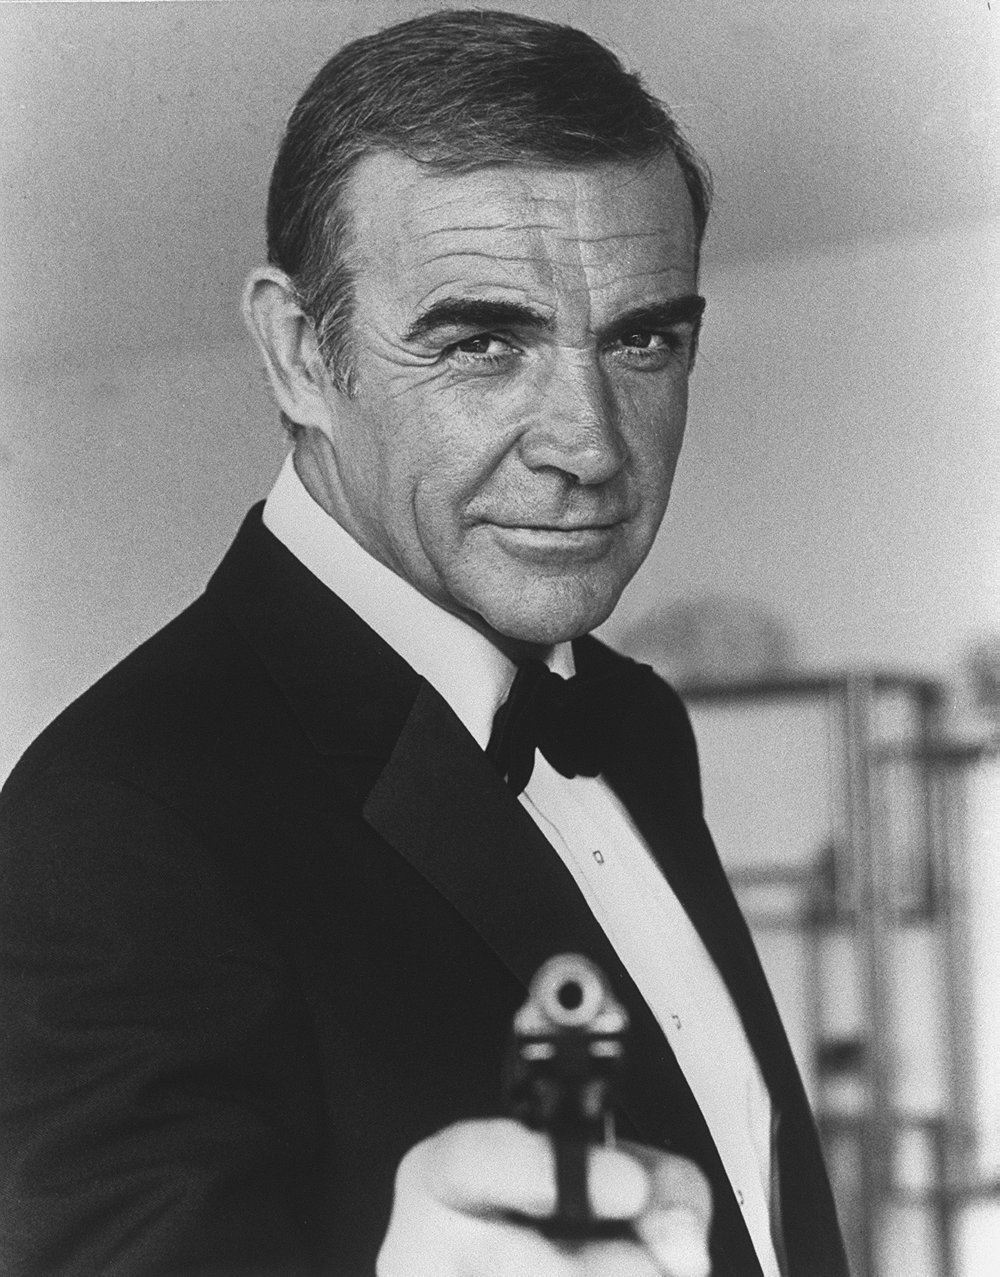 Sean Connery i klassisk positur som agent James Bond 